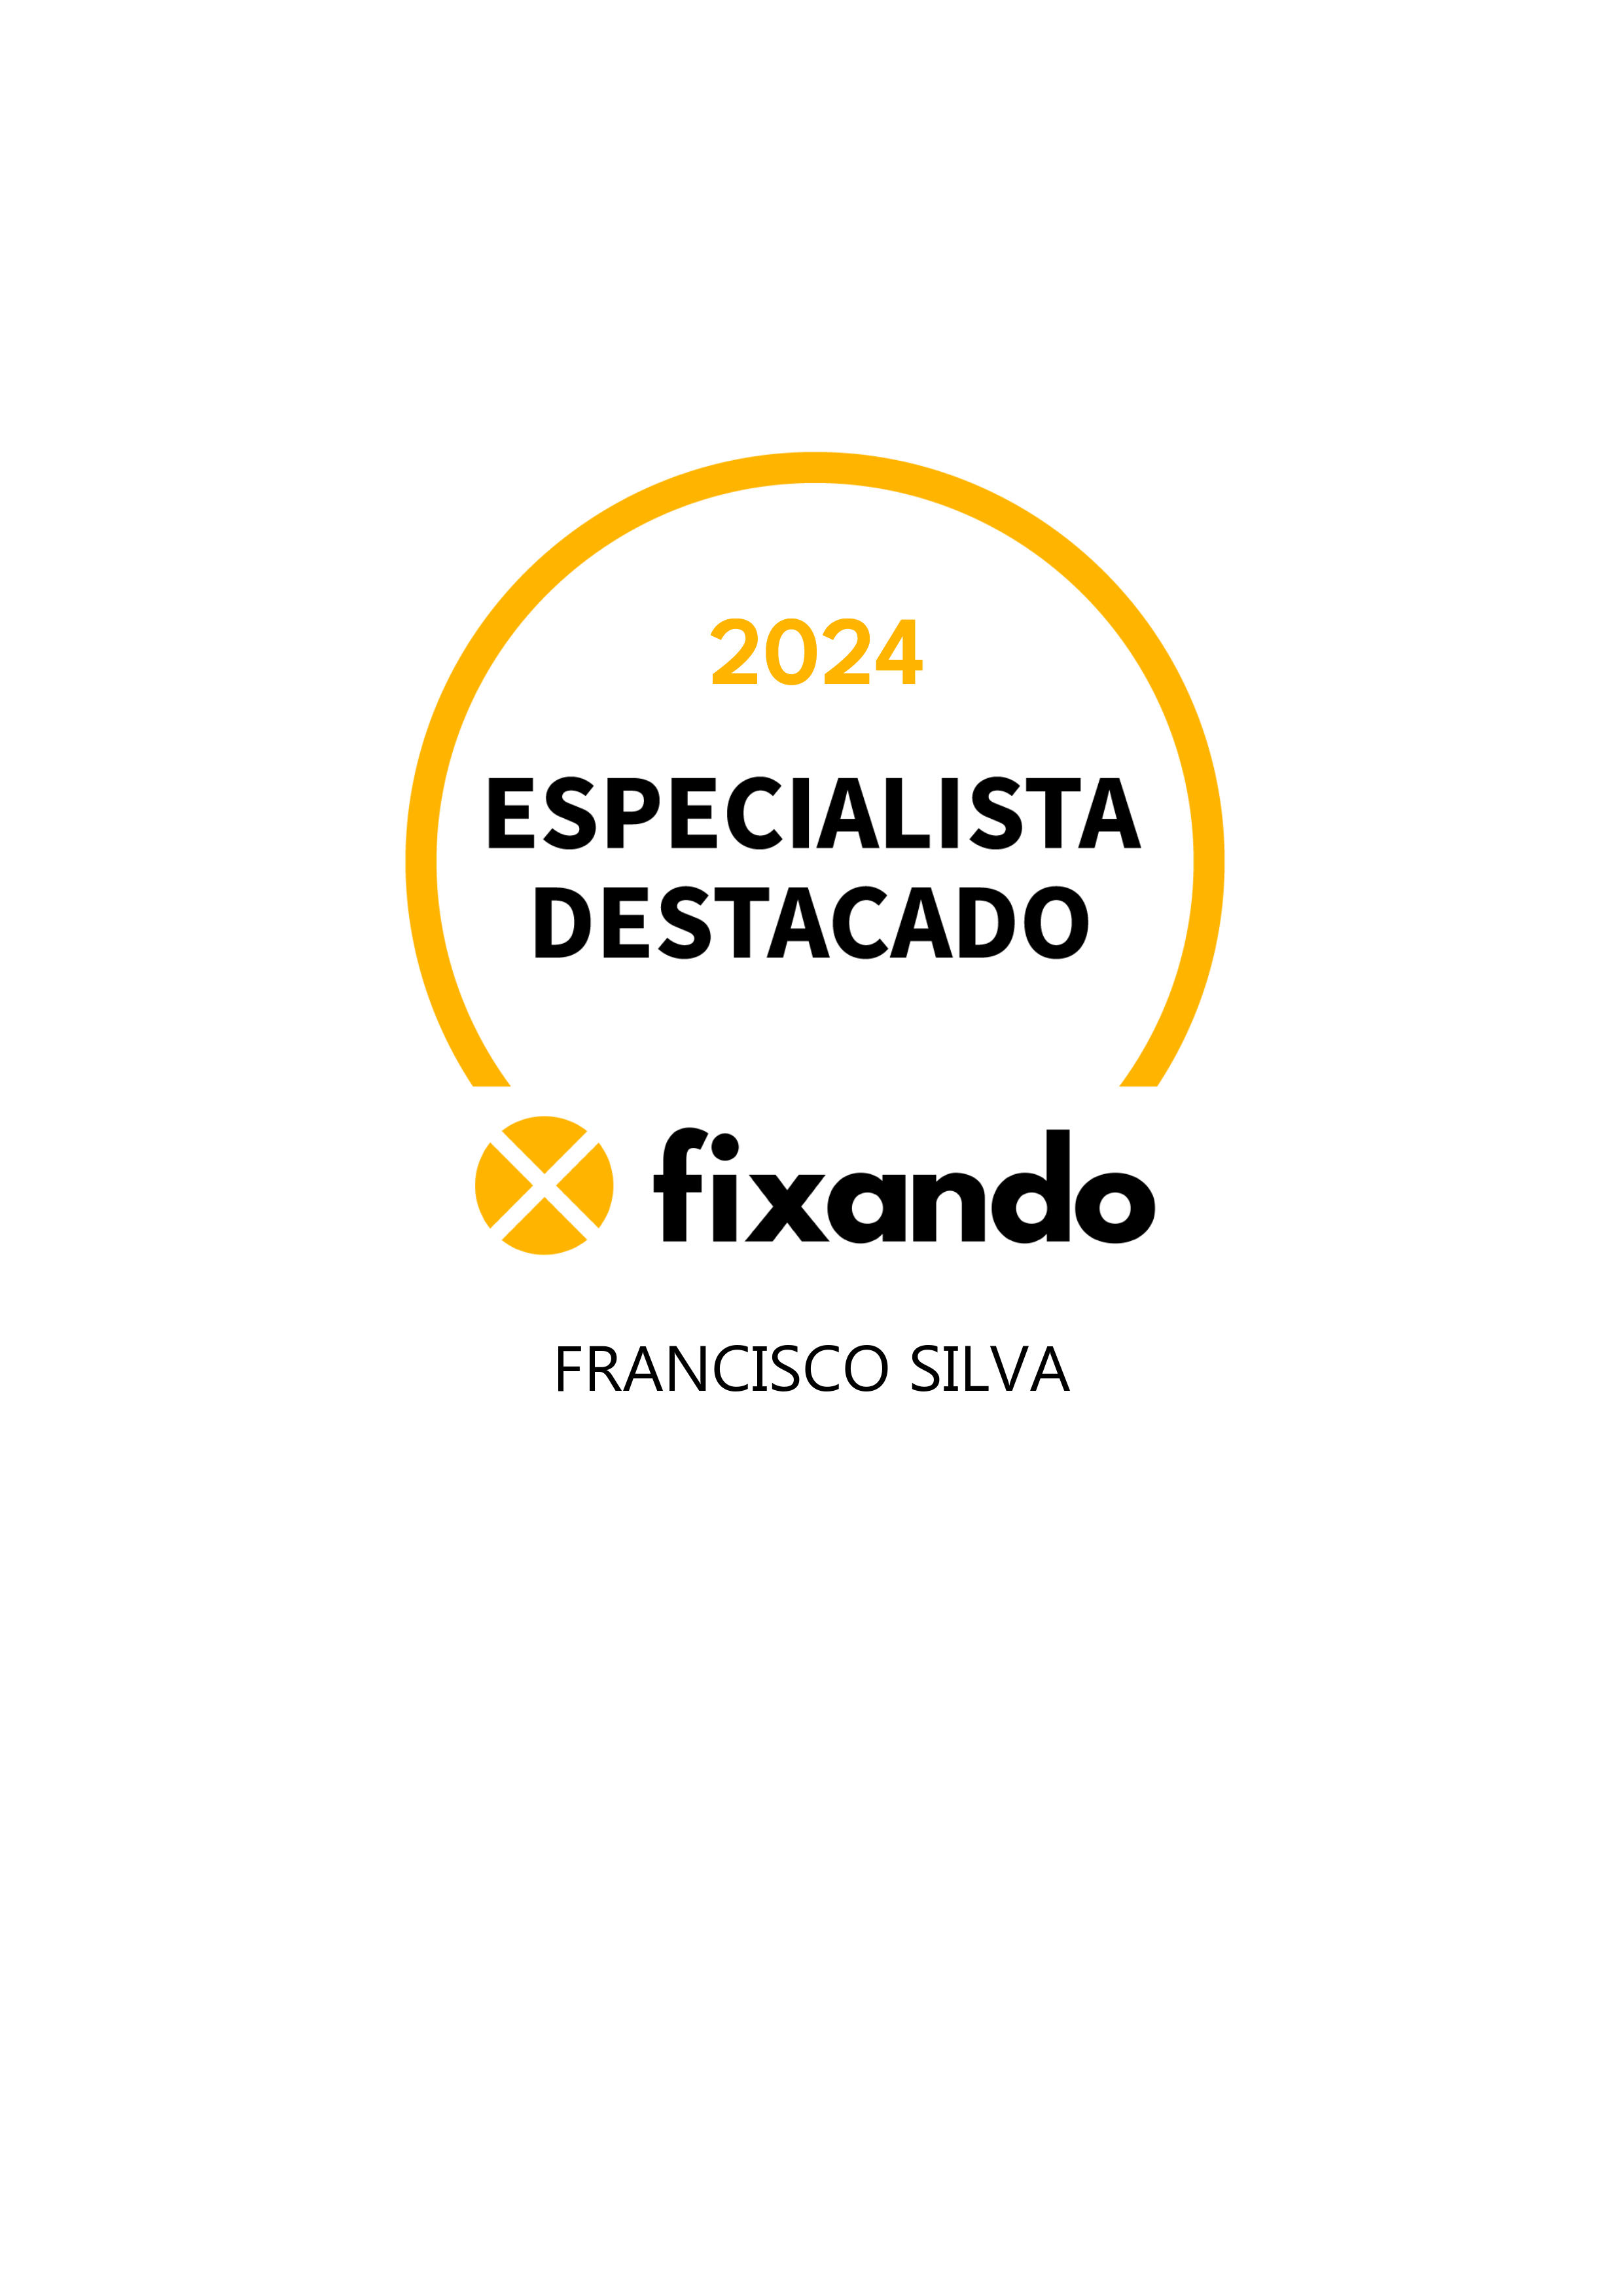 Francisco Silva - Castelo Branco - Reparação de Ar Condicionado